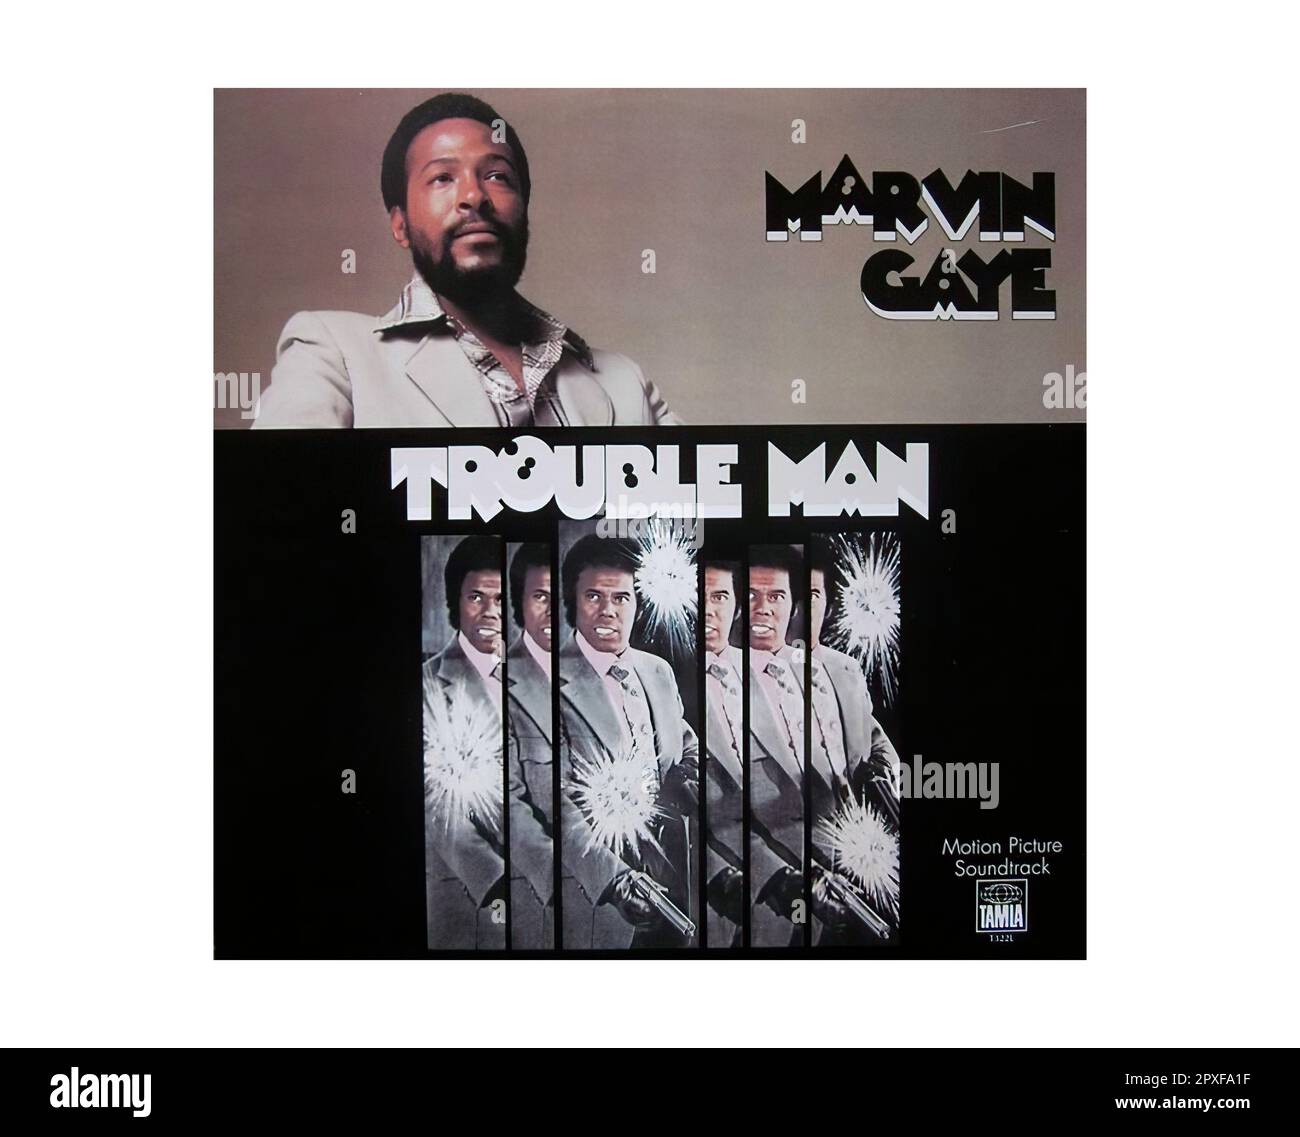 Marvin Gaye - pochette Vintage Vintage Vinyl Record Photo Stock - Alamy